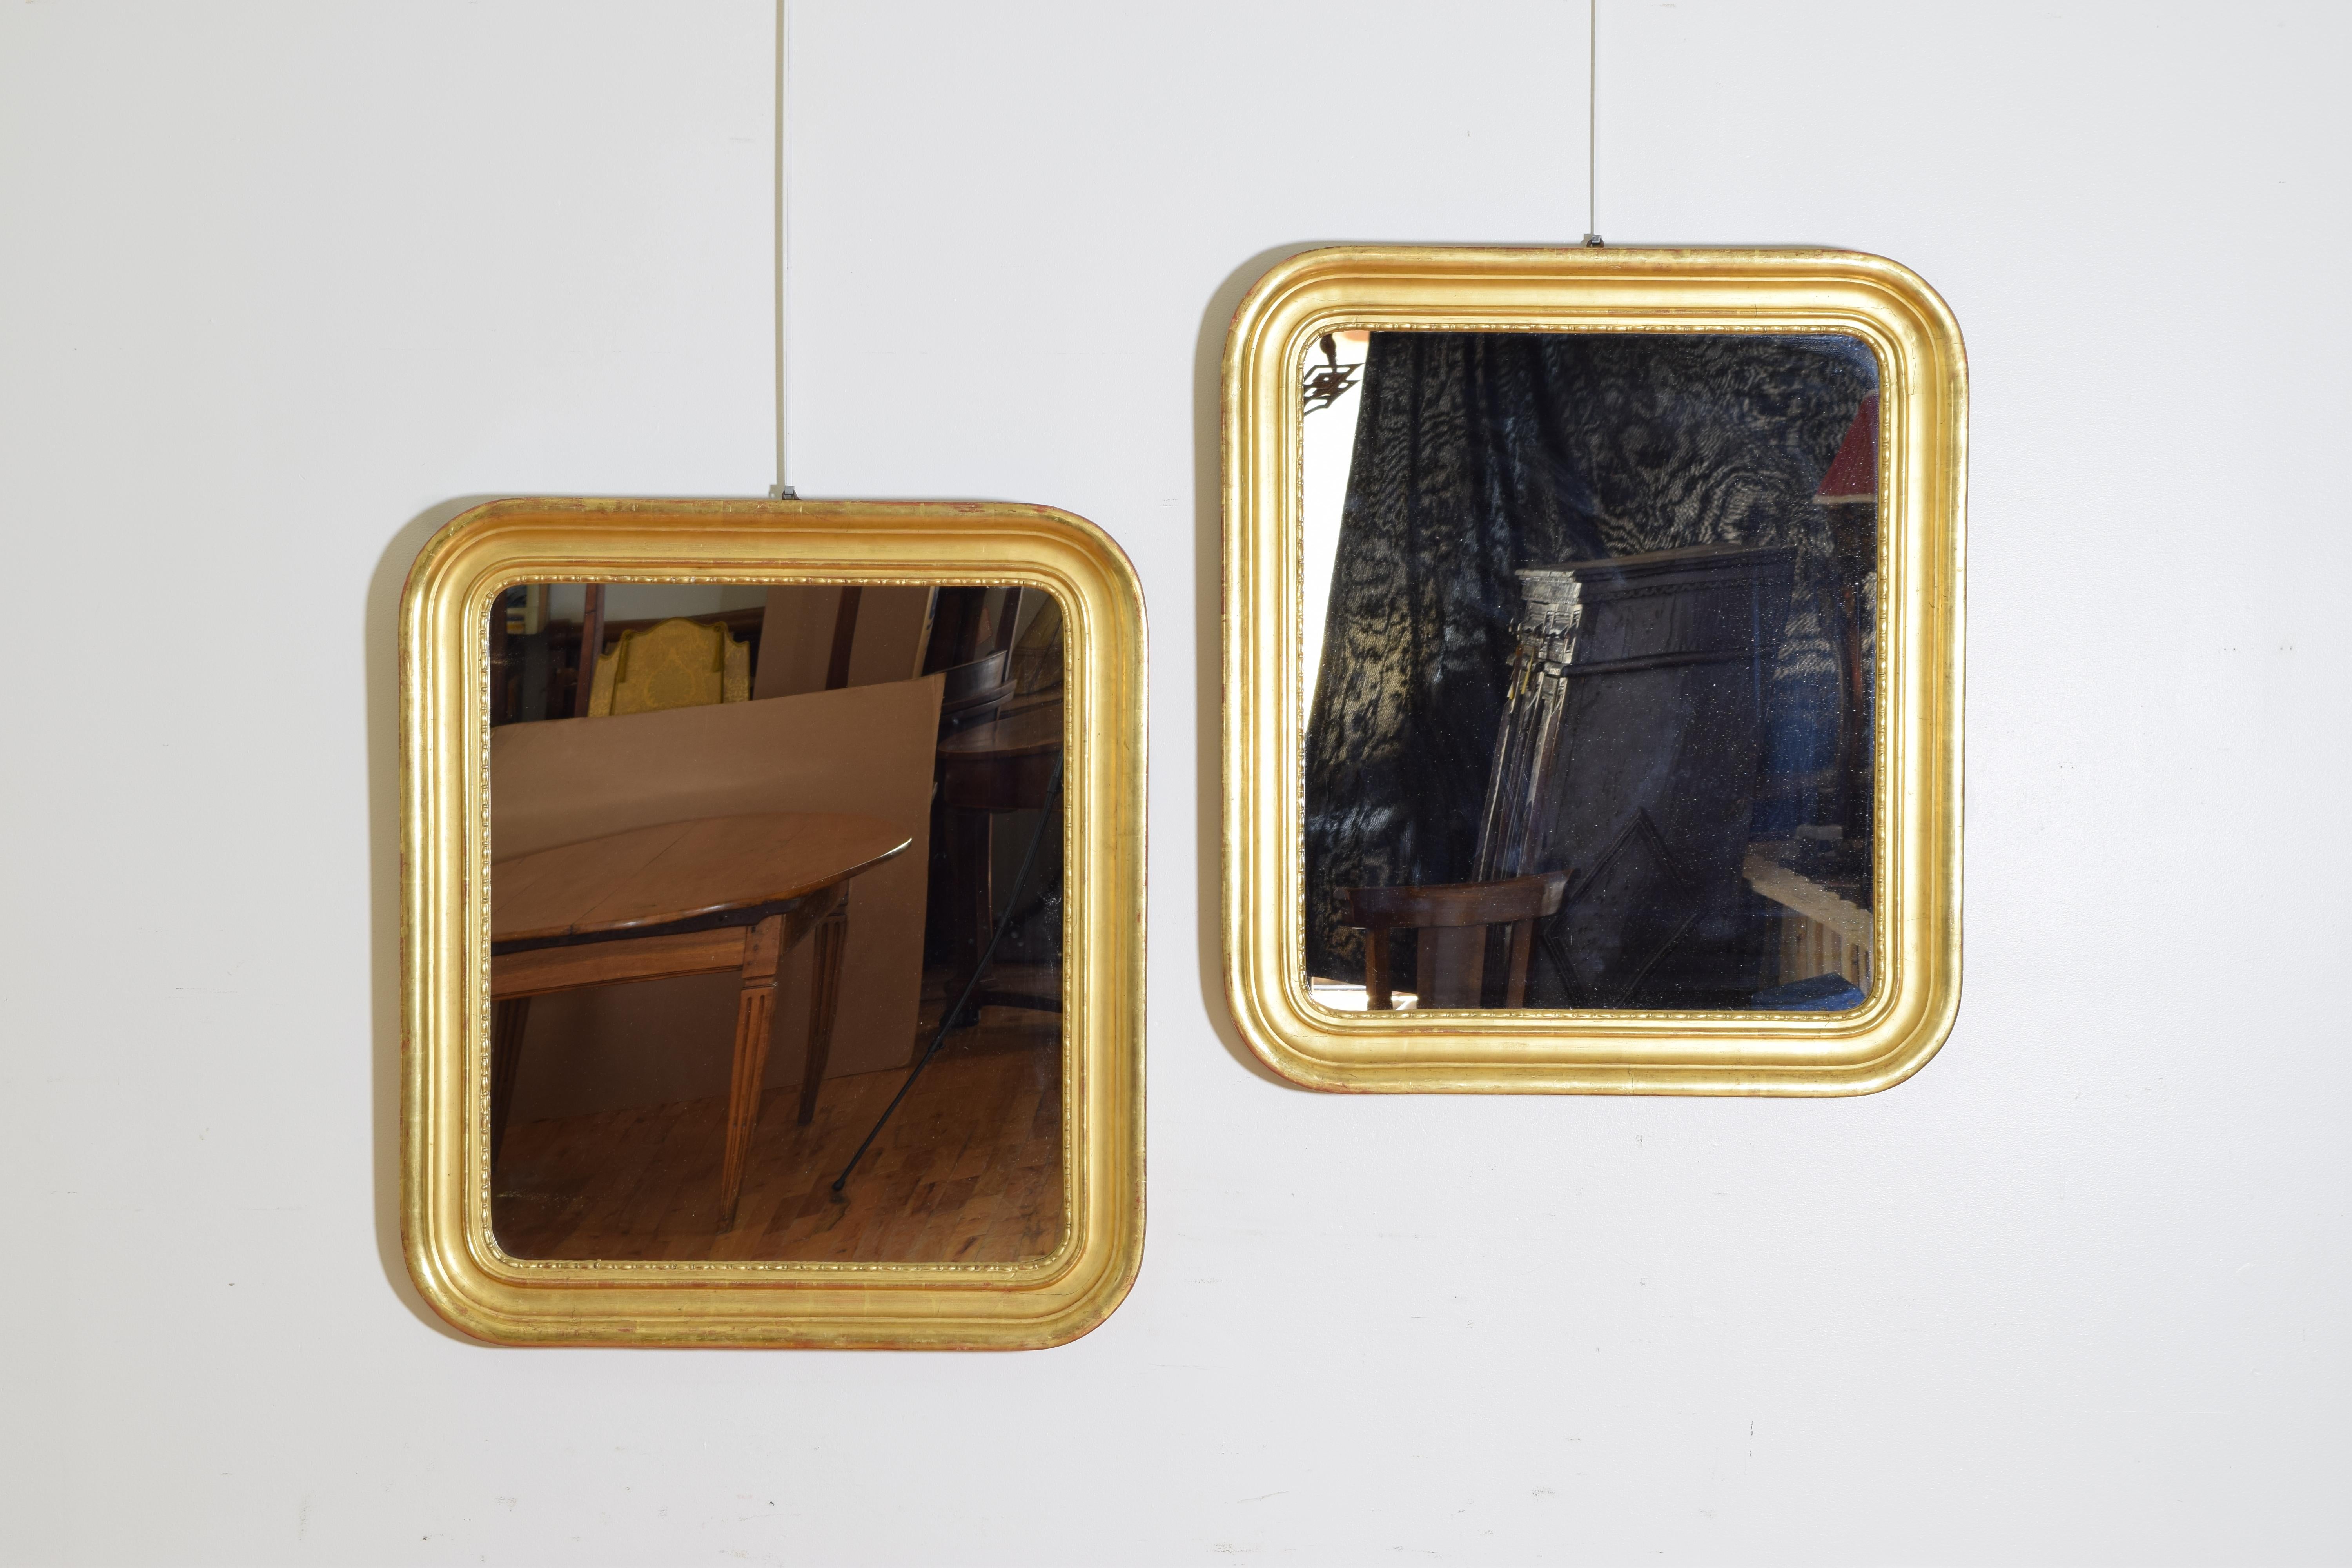 Jeder Spiegel von rechteckiger Form und mit abgerundeten Ecken, geschnitzt Goldholz und Gesso Formen, die innerste eine Linie und Pfeil-Muster, die Spiegelplatten sind modern